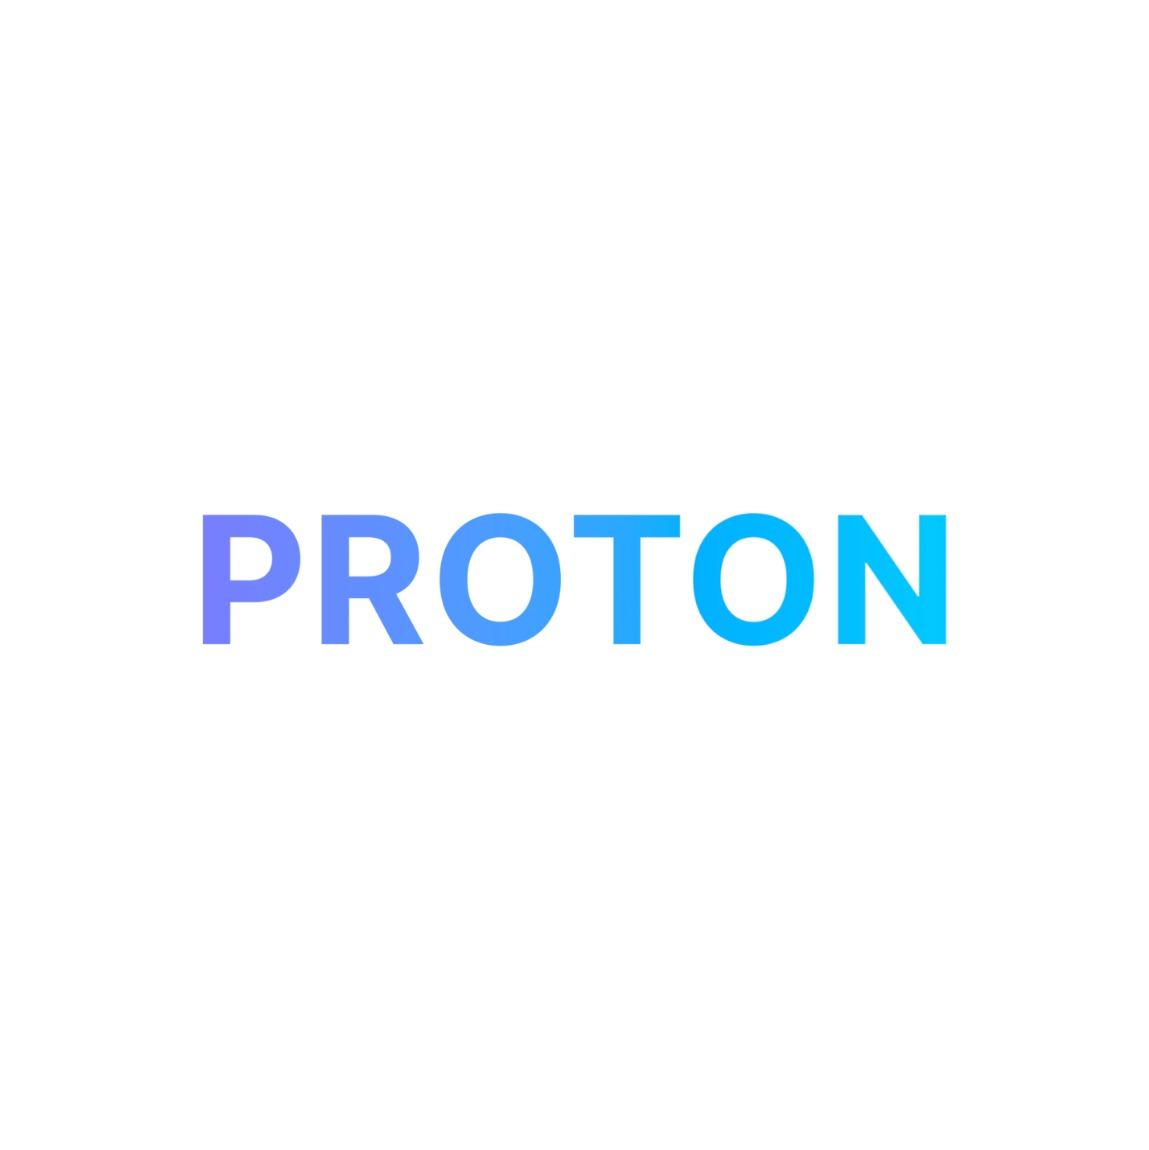 Proton Labs